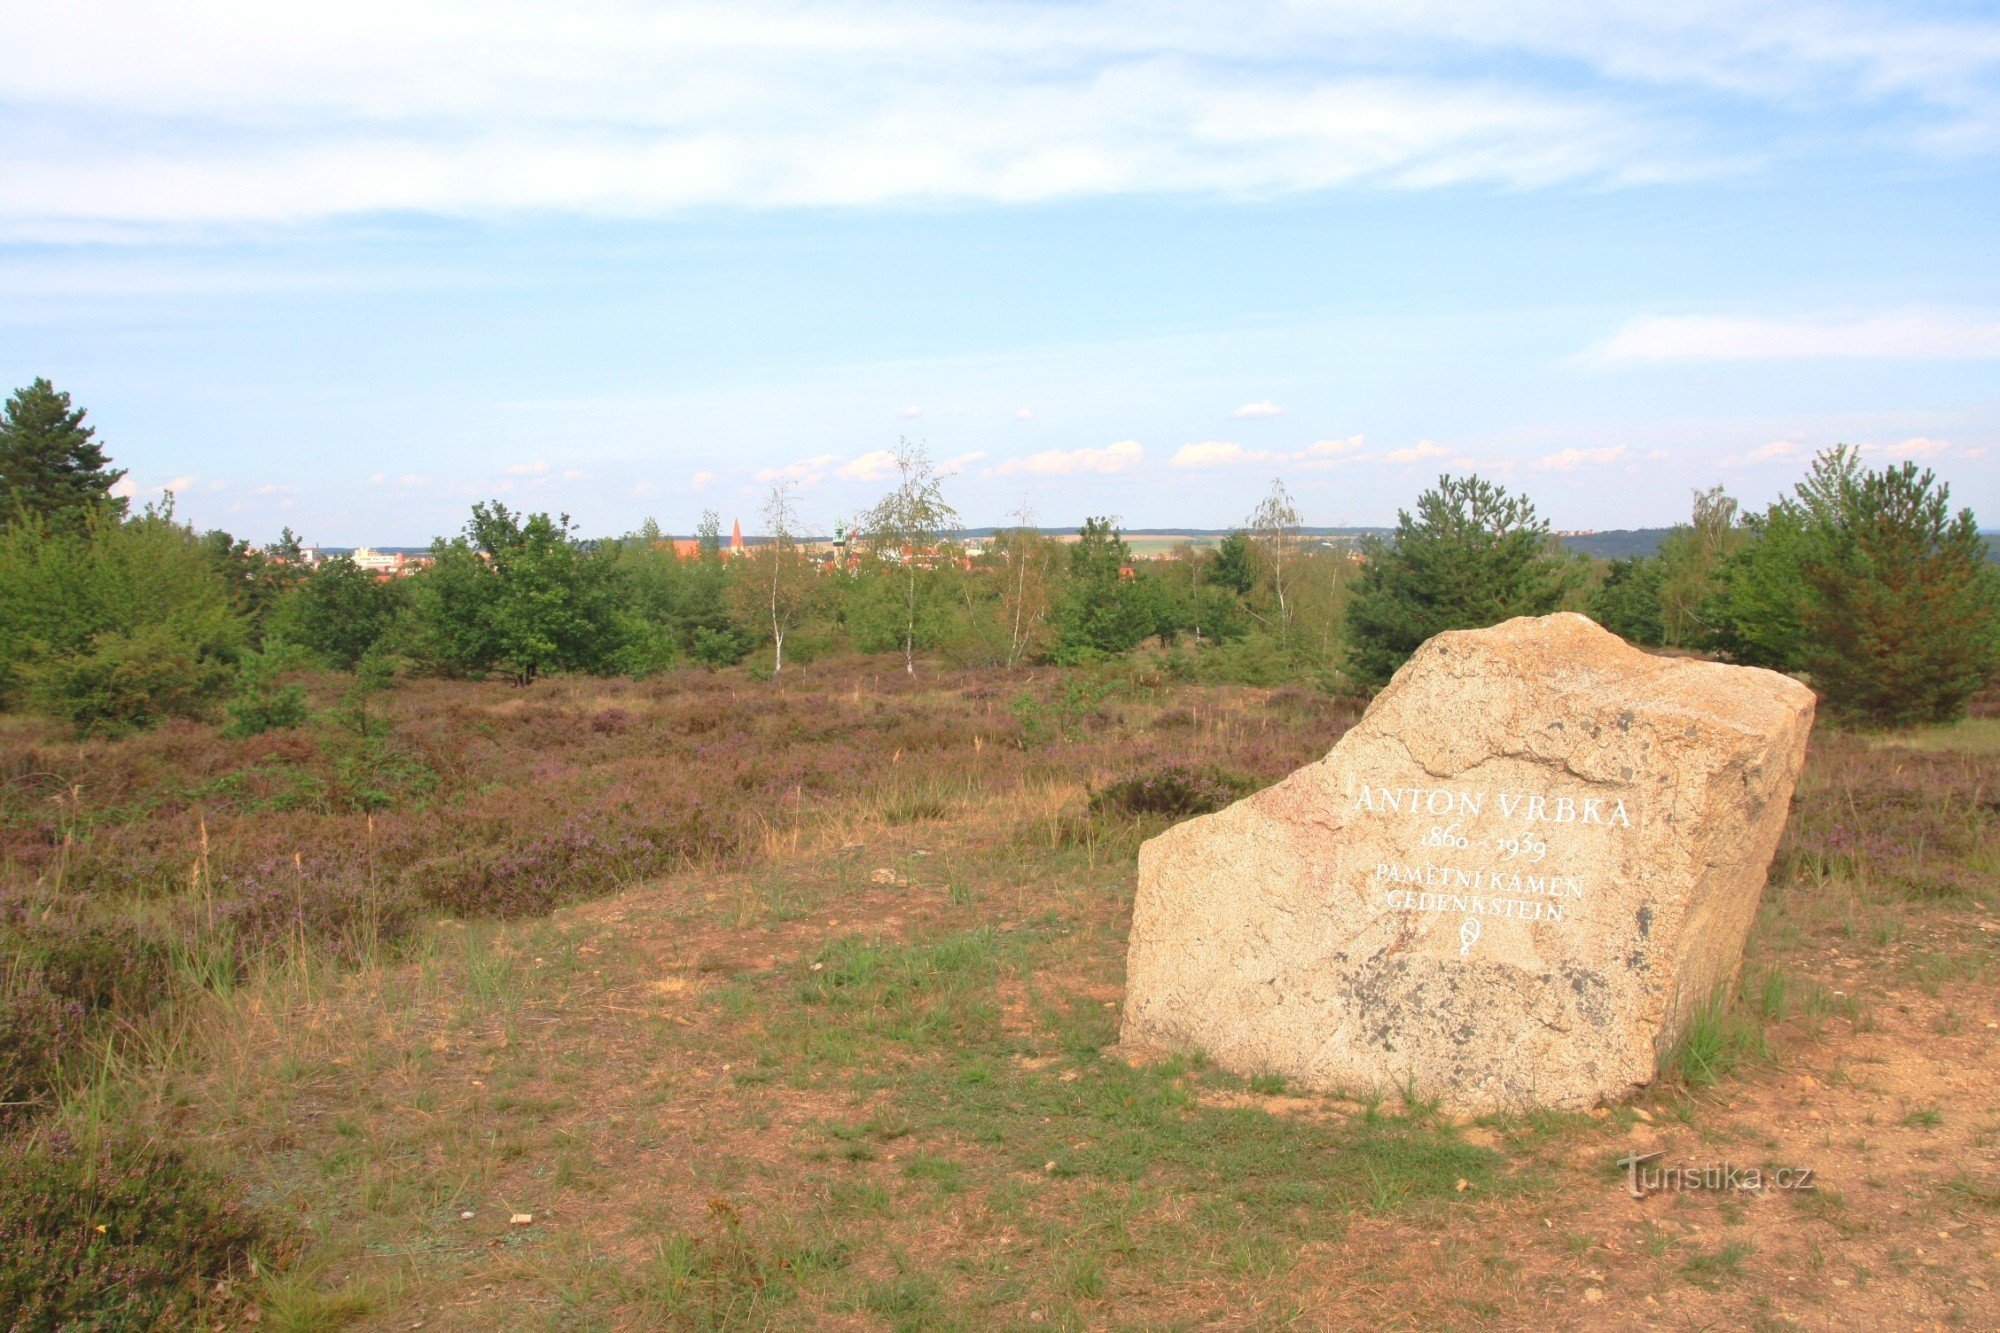 Kraví hora - monument till Anton Vrbka